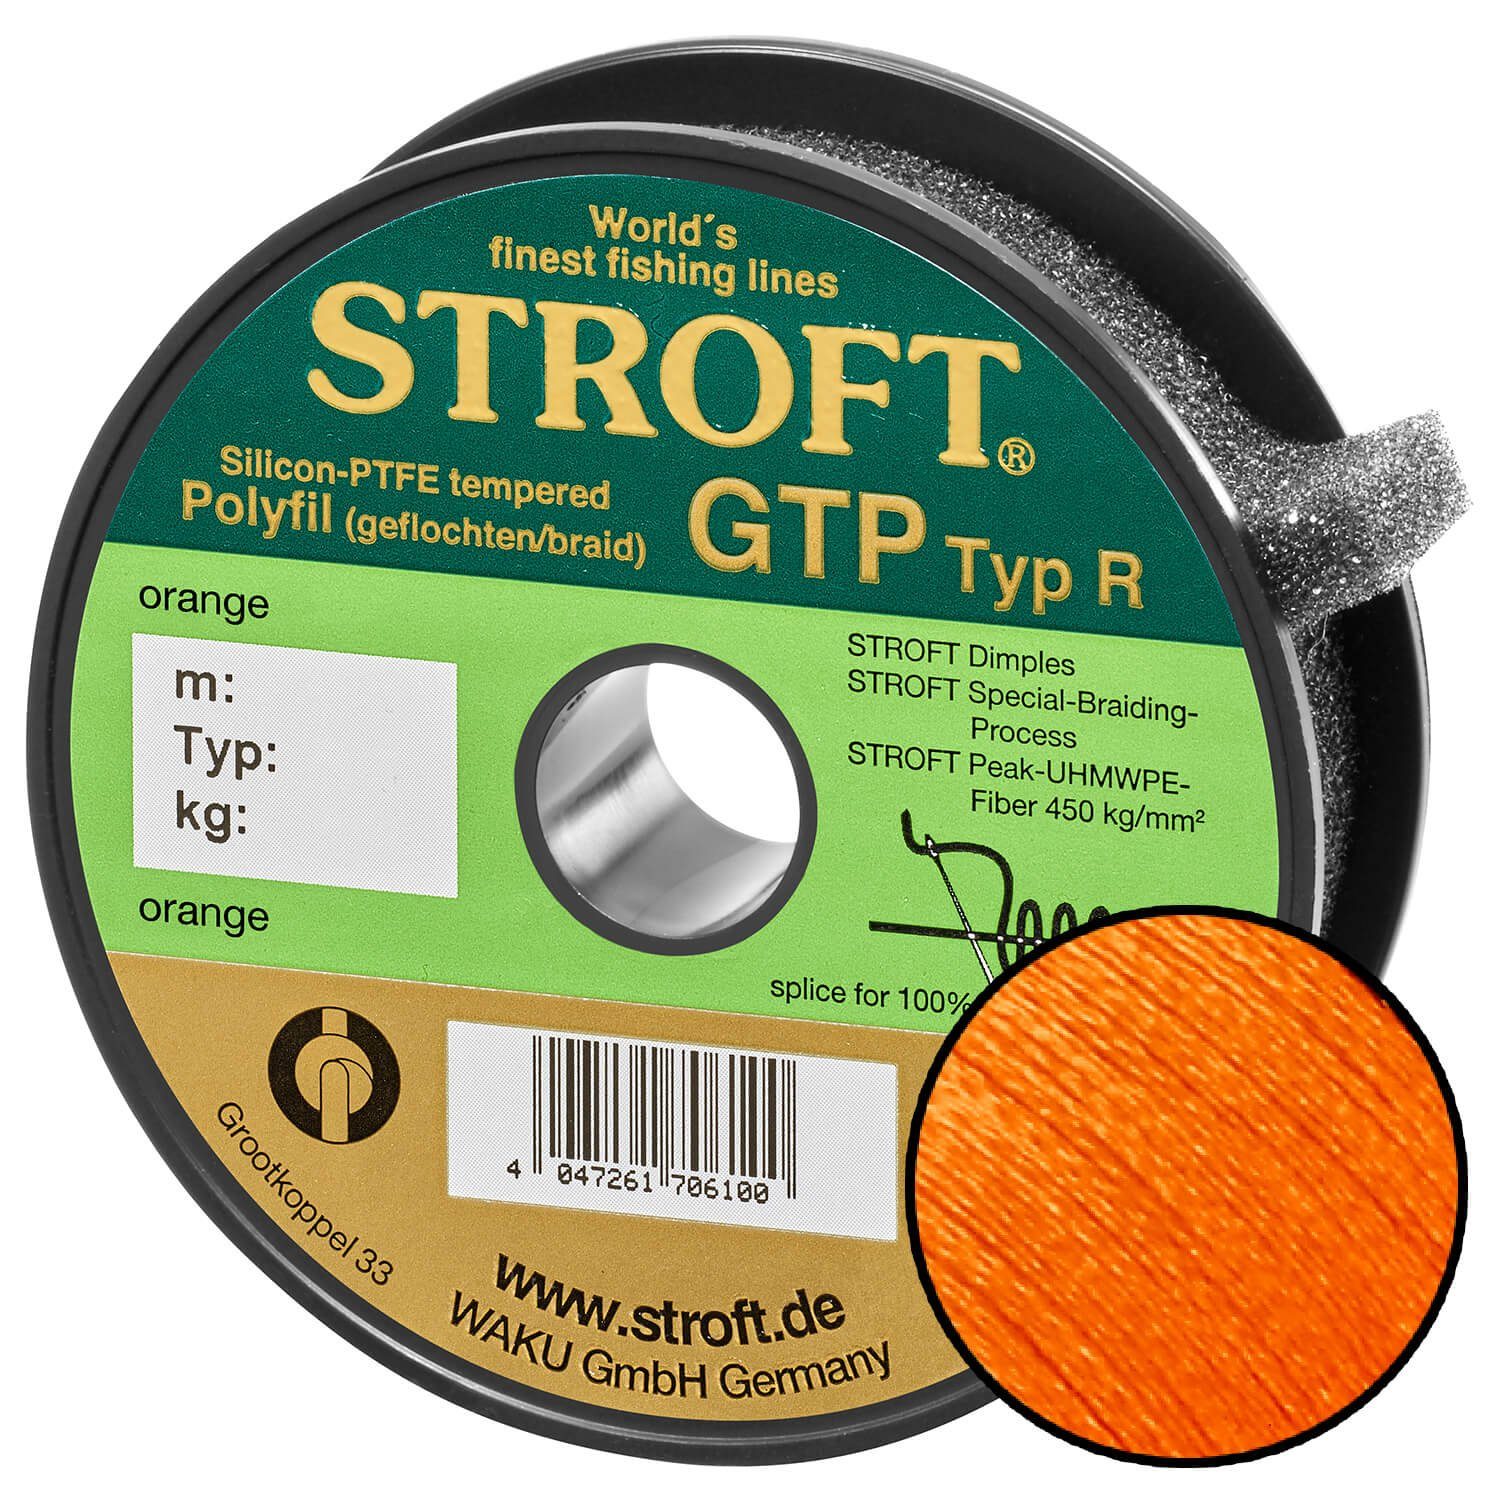 Stroft Angelschnur STROFT GTP Typ R Geflochtene Angelschnur 200m orange, 200 m Länge, 0.15 mm Fadendurchmesser, (1-St), 4.5kg Tragkraft